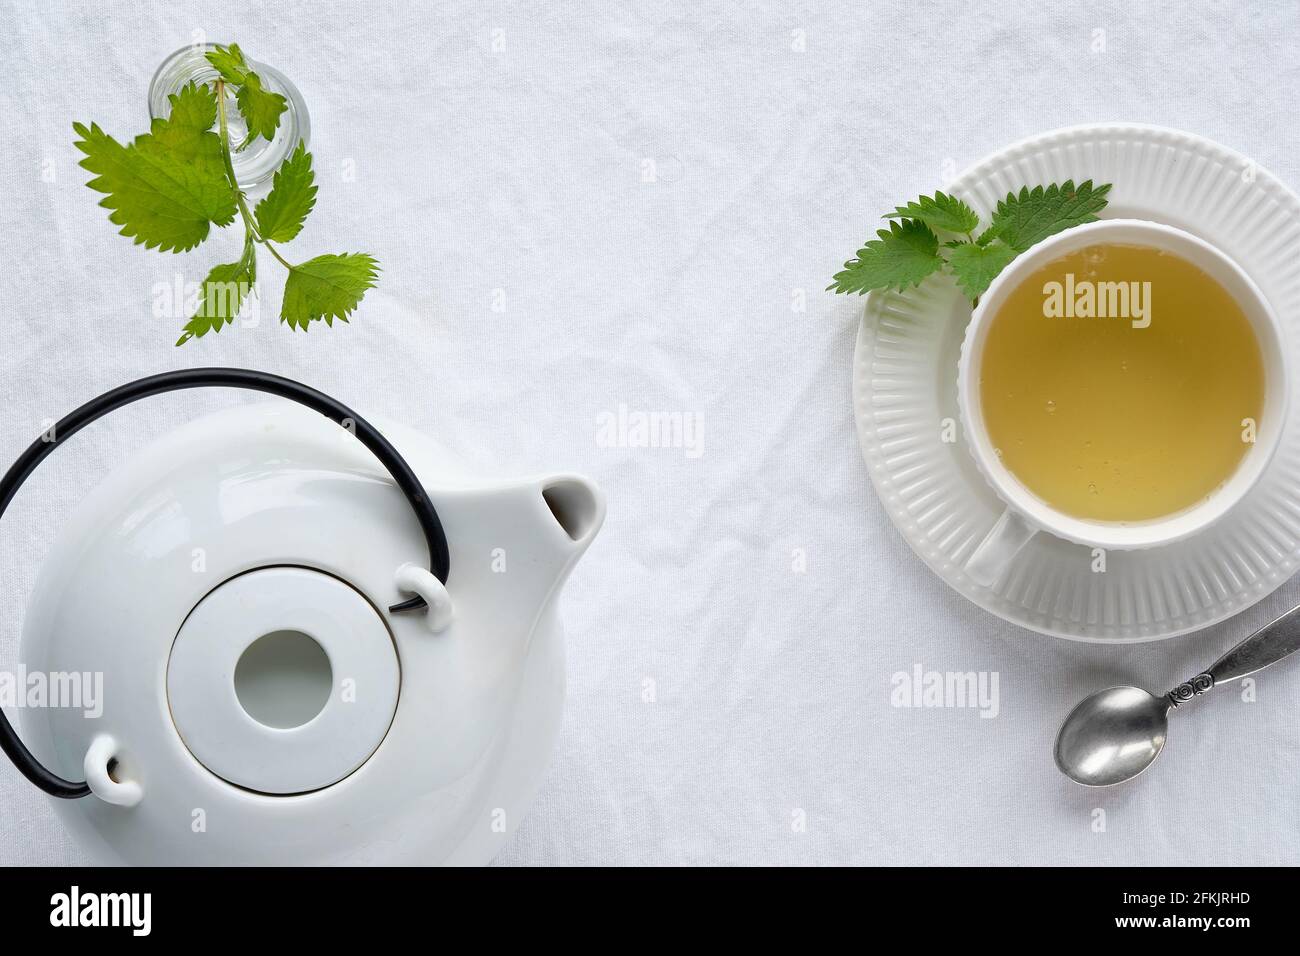 Tasse Brennnessel-Tee, frische Brennnesselkräuter. Flache Tischdecke, Draufsicht, aus weißer textiler Tischdecke. Weiße Teekannen aus Keramik. Stockfoto